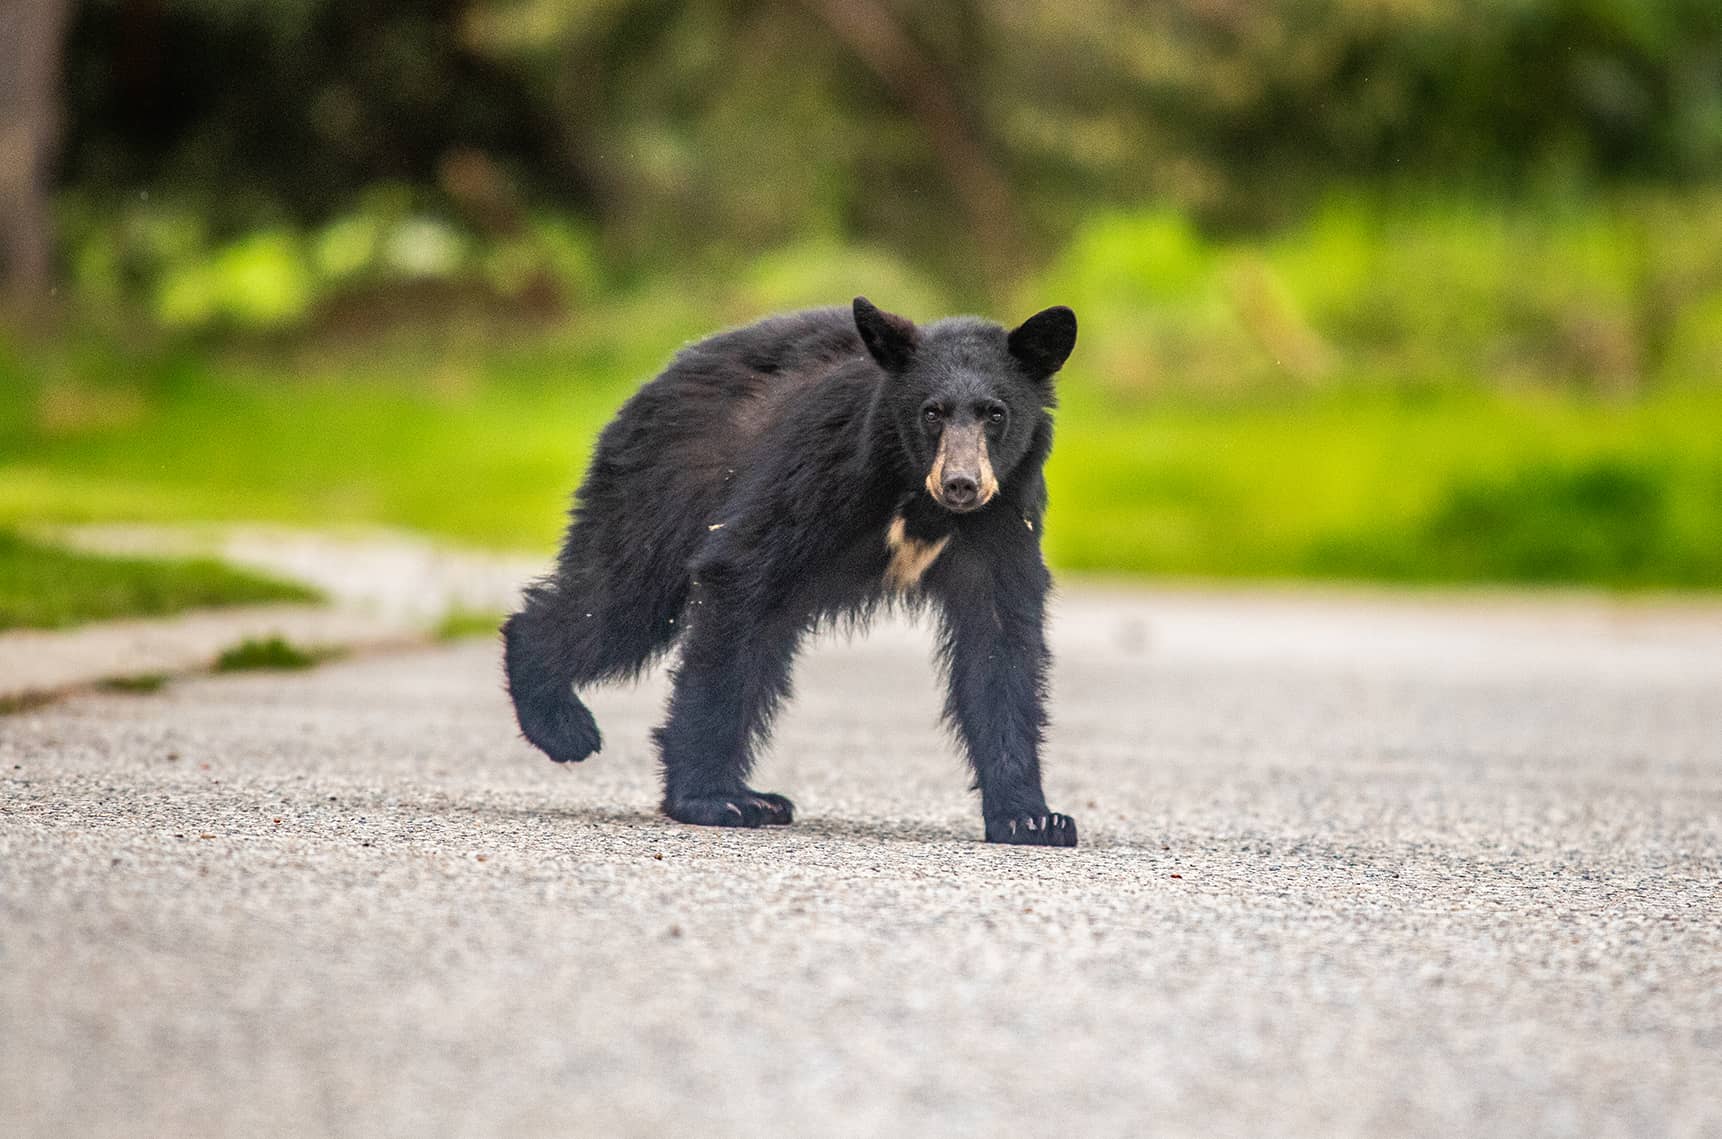 Bear cub Revelstoke